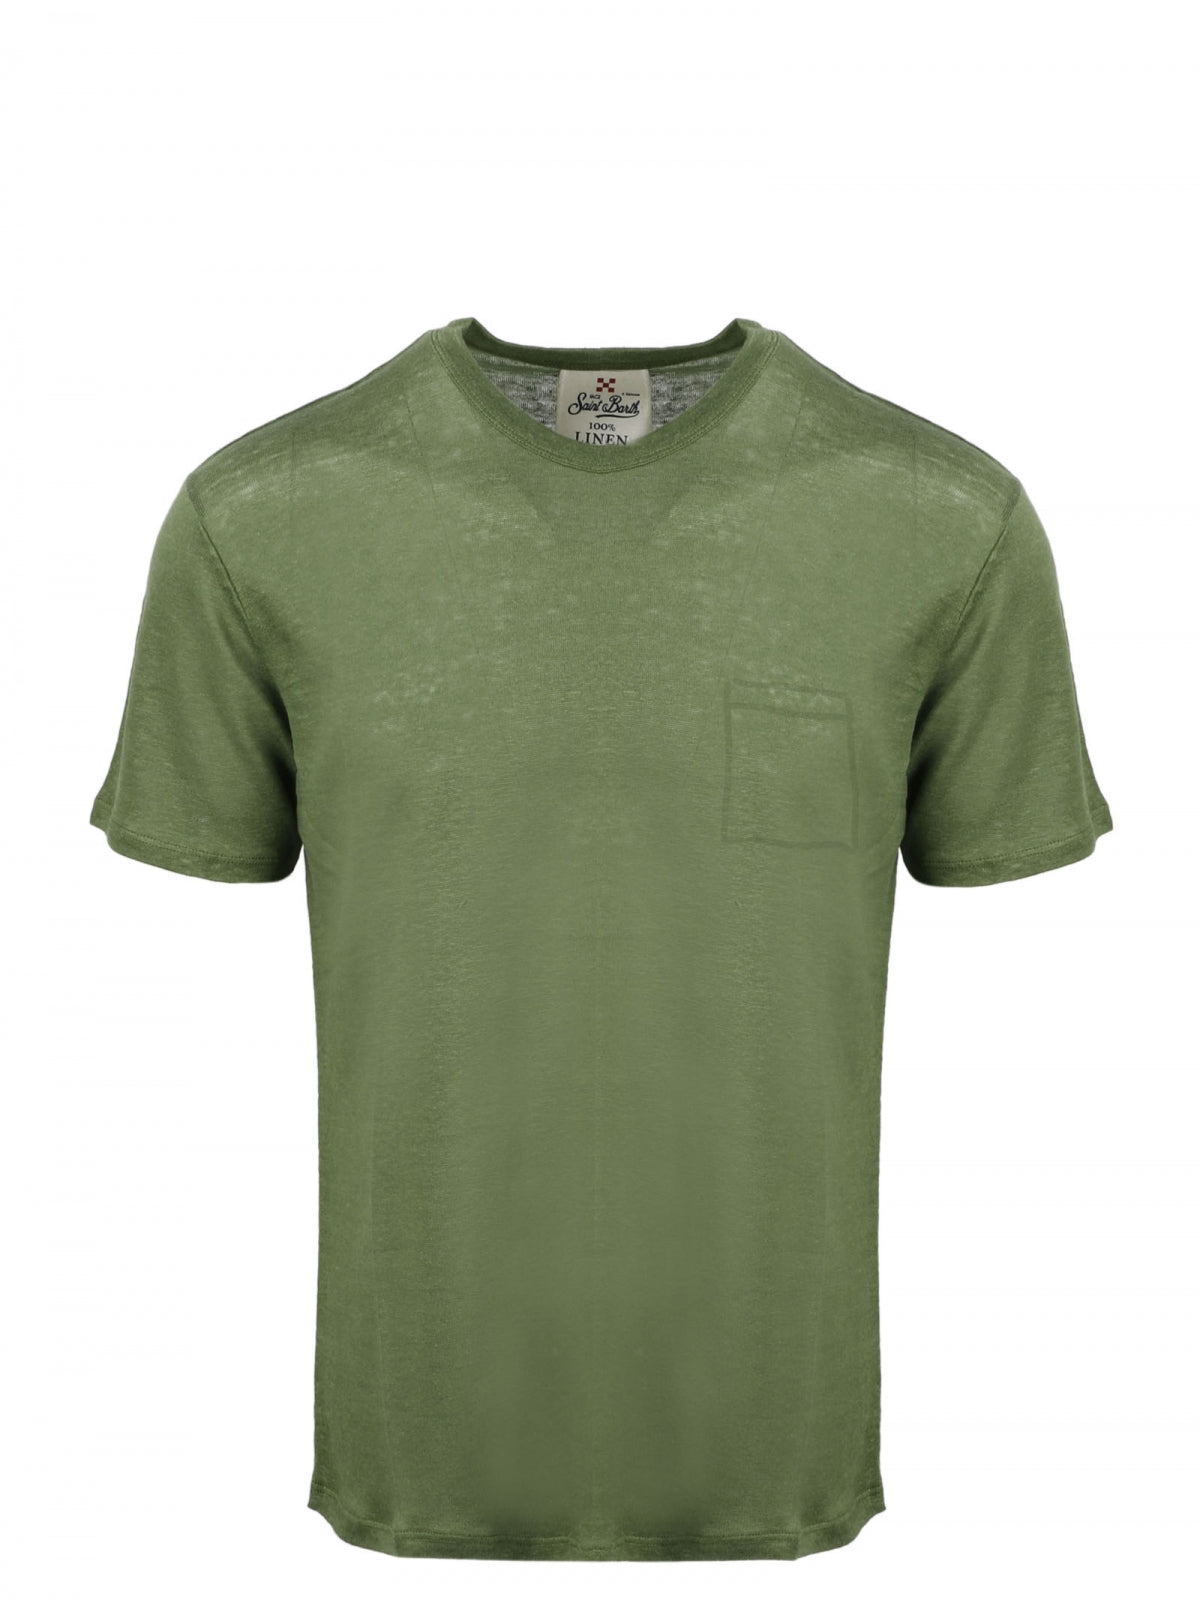 Men's regular fit linen T-shirt